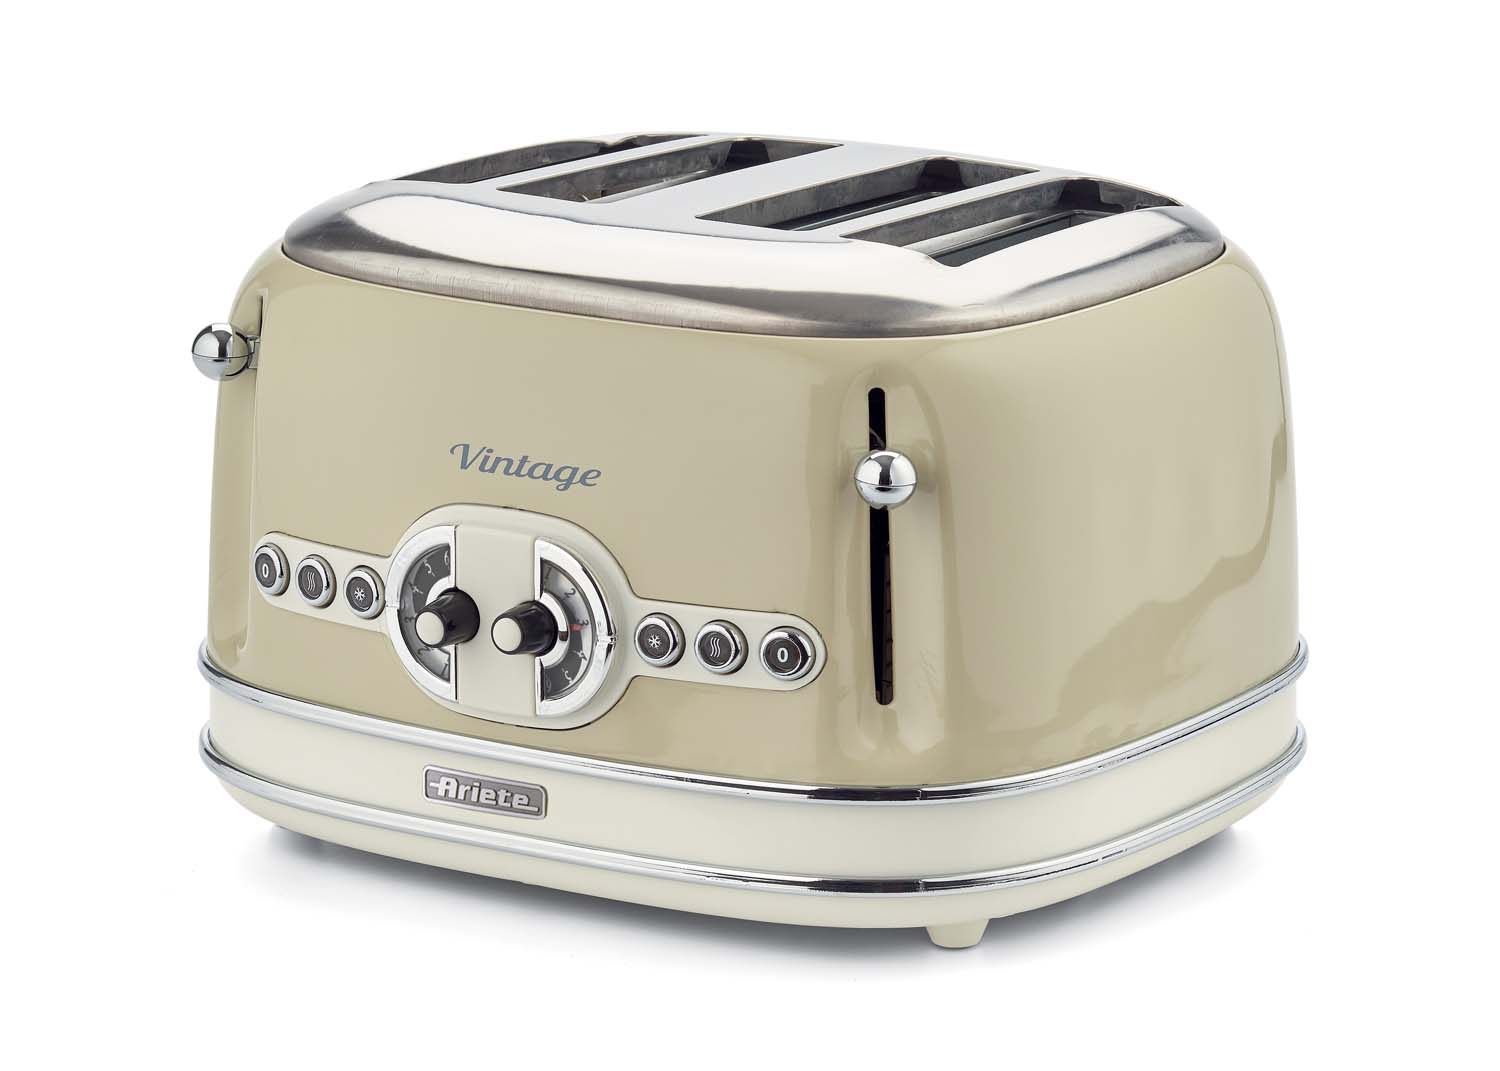 6 Toaststufen 1,7 l 2000 W 1600 W Ariete,156 Toaster im Vintage-Design für 4 Scheiben mit sichtbarem Wasserstand aus lackiertem Edelstahl /& elektrischer Design-Wasserkocher aus Edelstahl